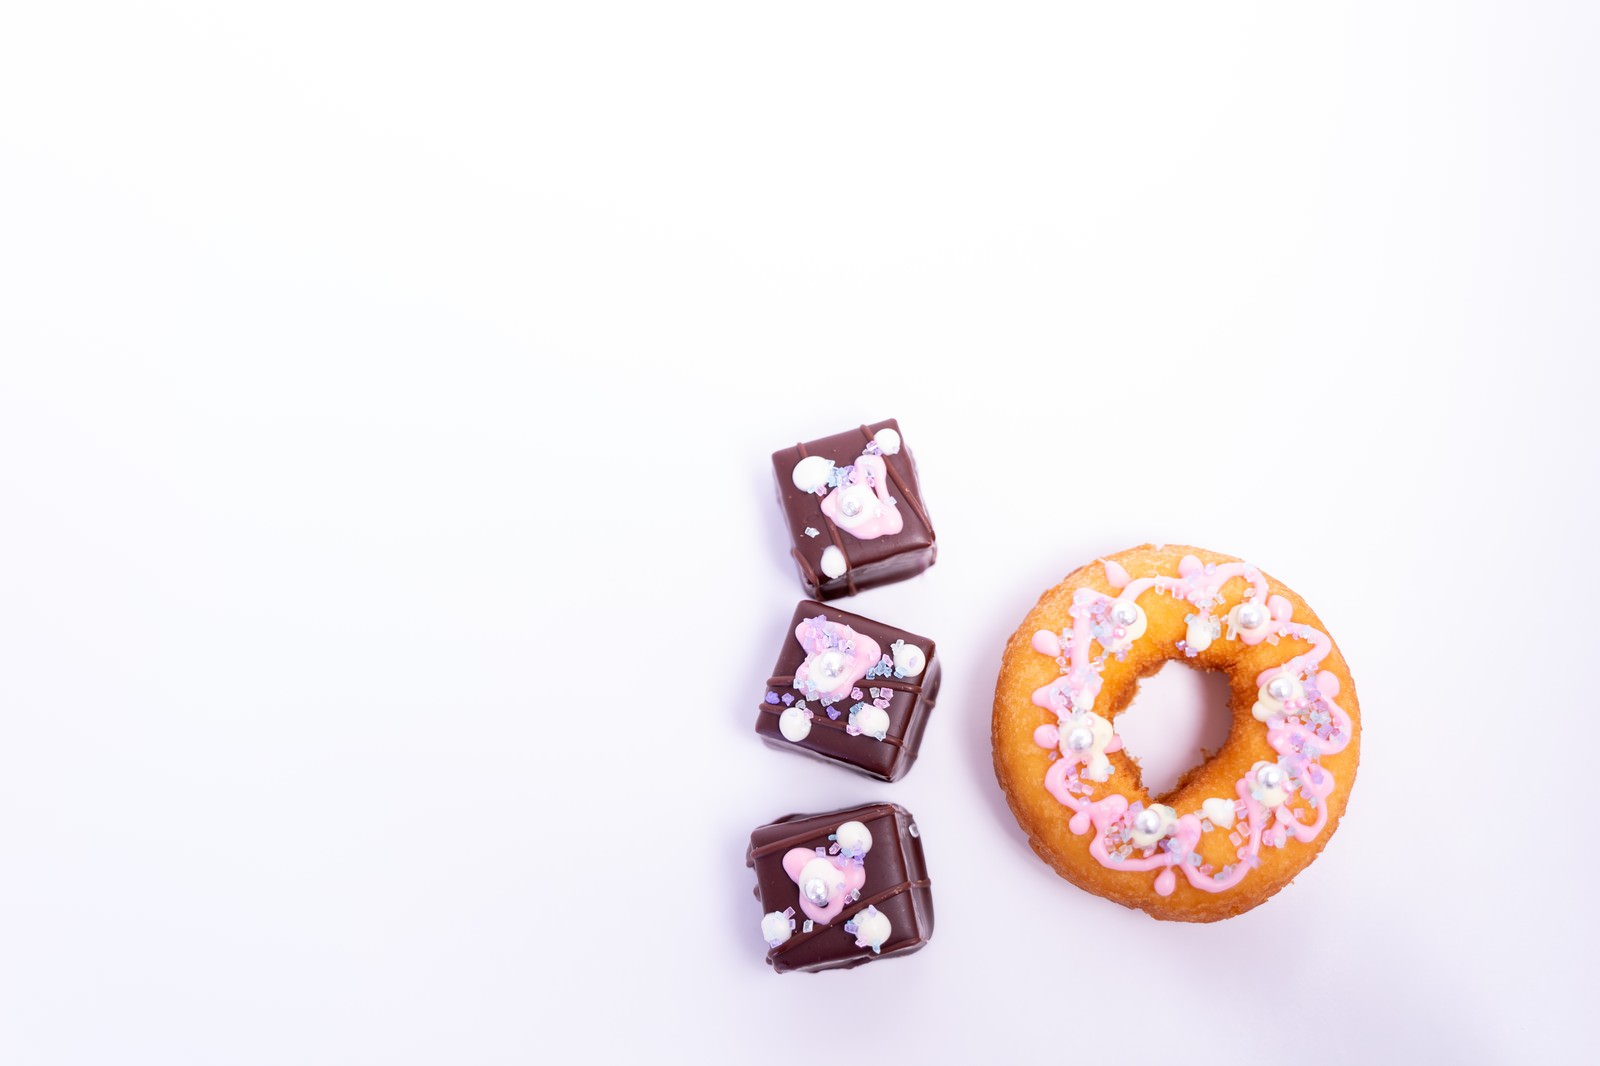 「ドーナッツとチョコで「10」 | フリー素材のぱくたそ」の写真